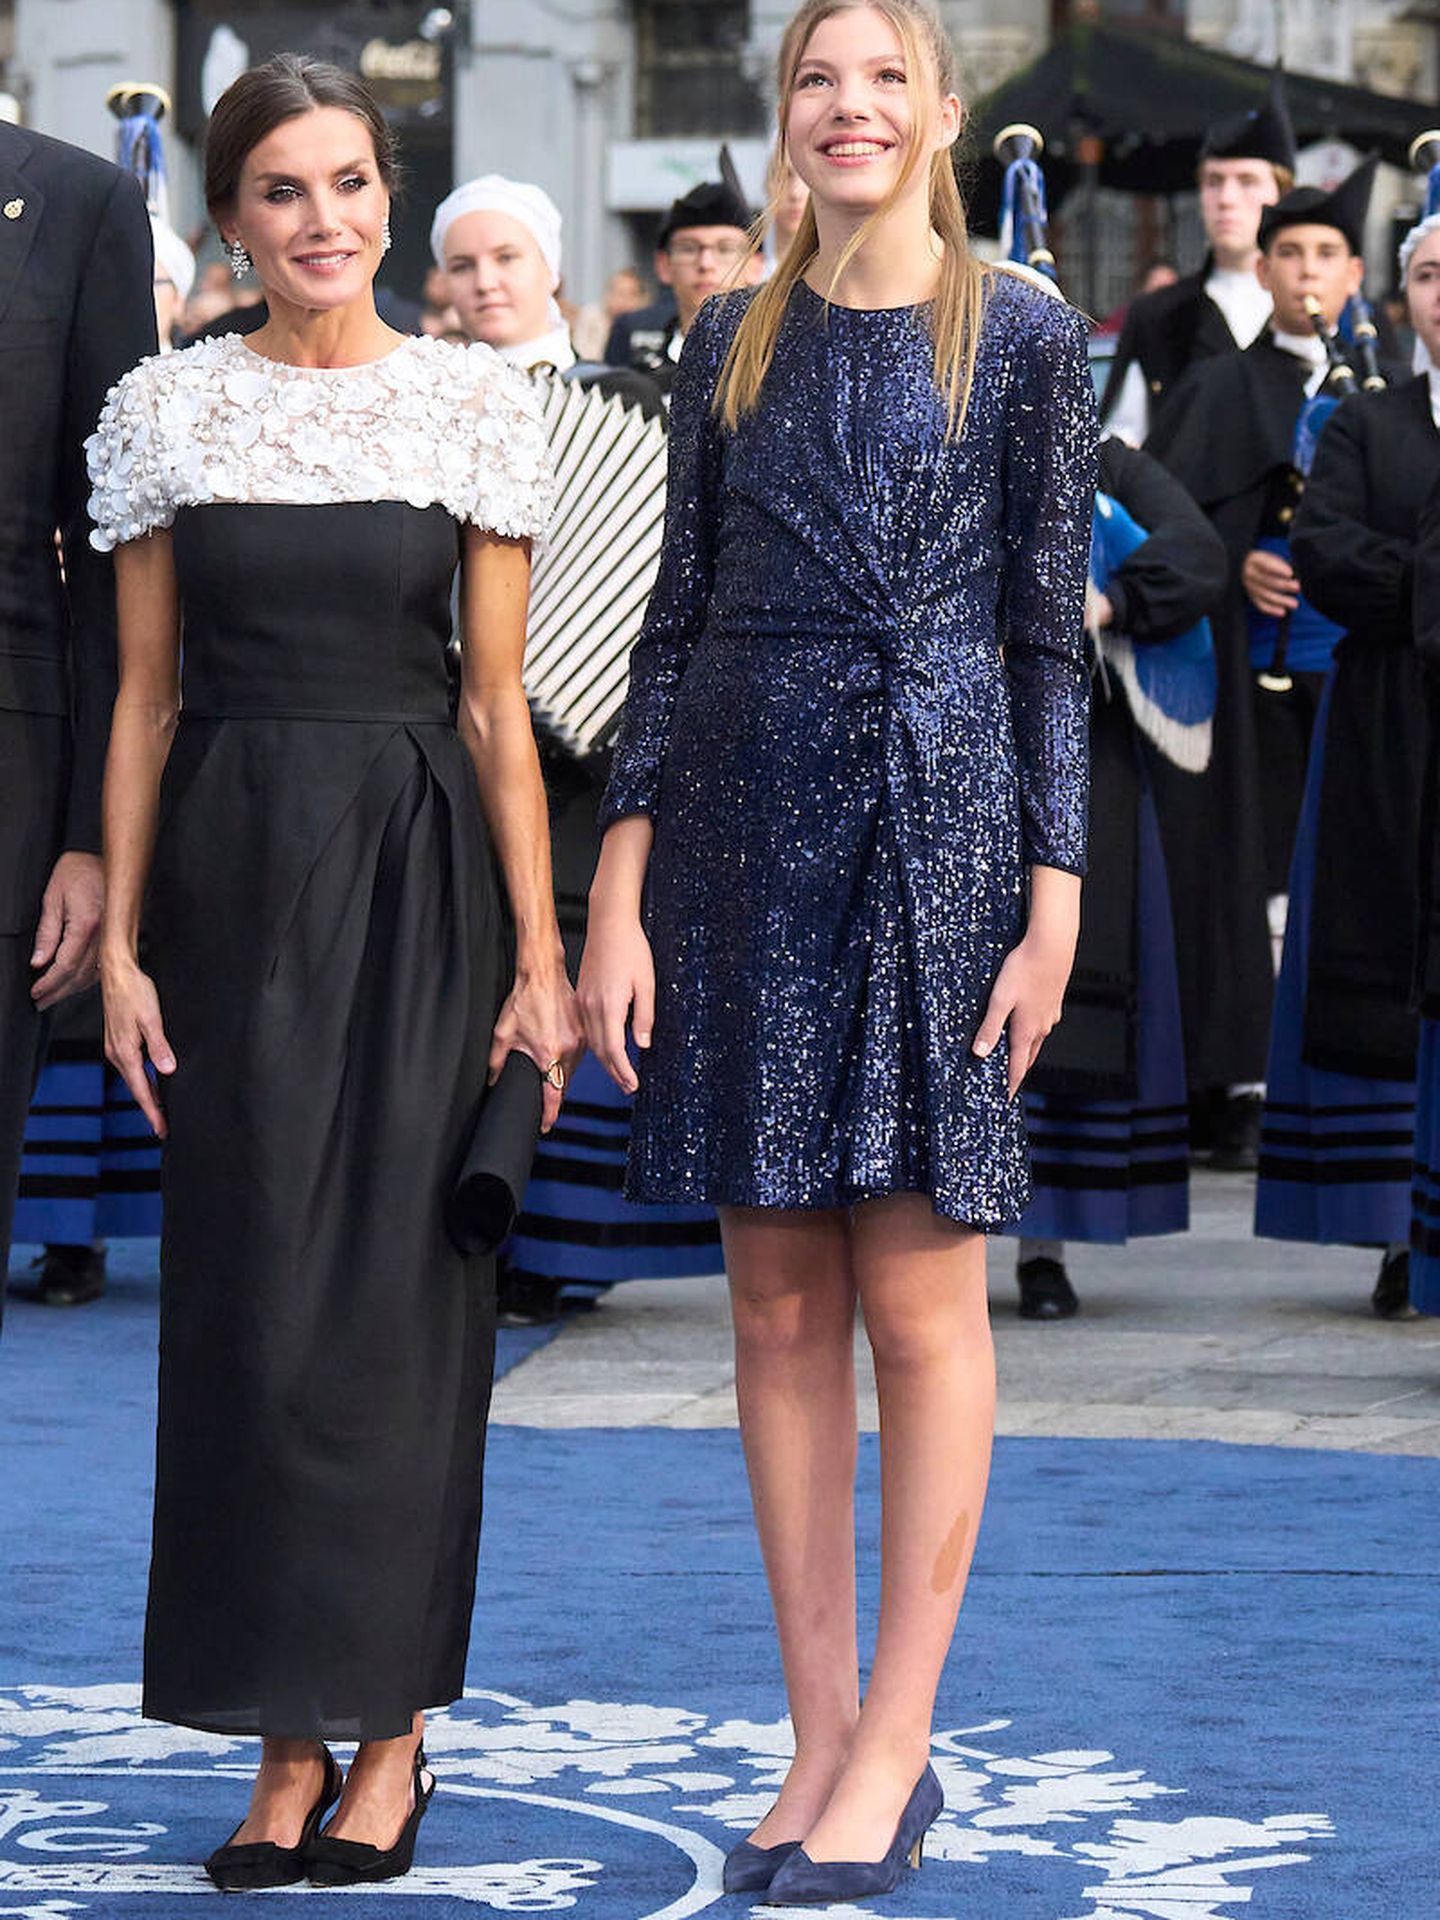 La reina Letizia con vestido en blanco y negro en los Premios Princesa de Asturias. (Limited Pictures)